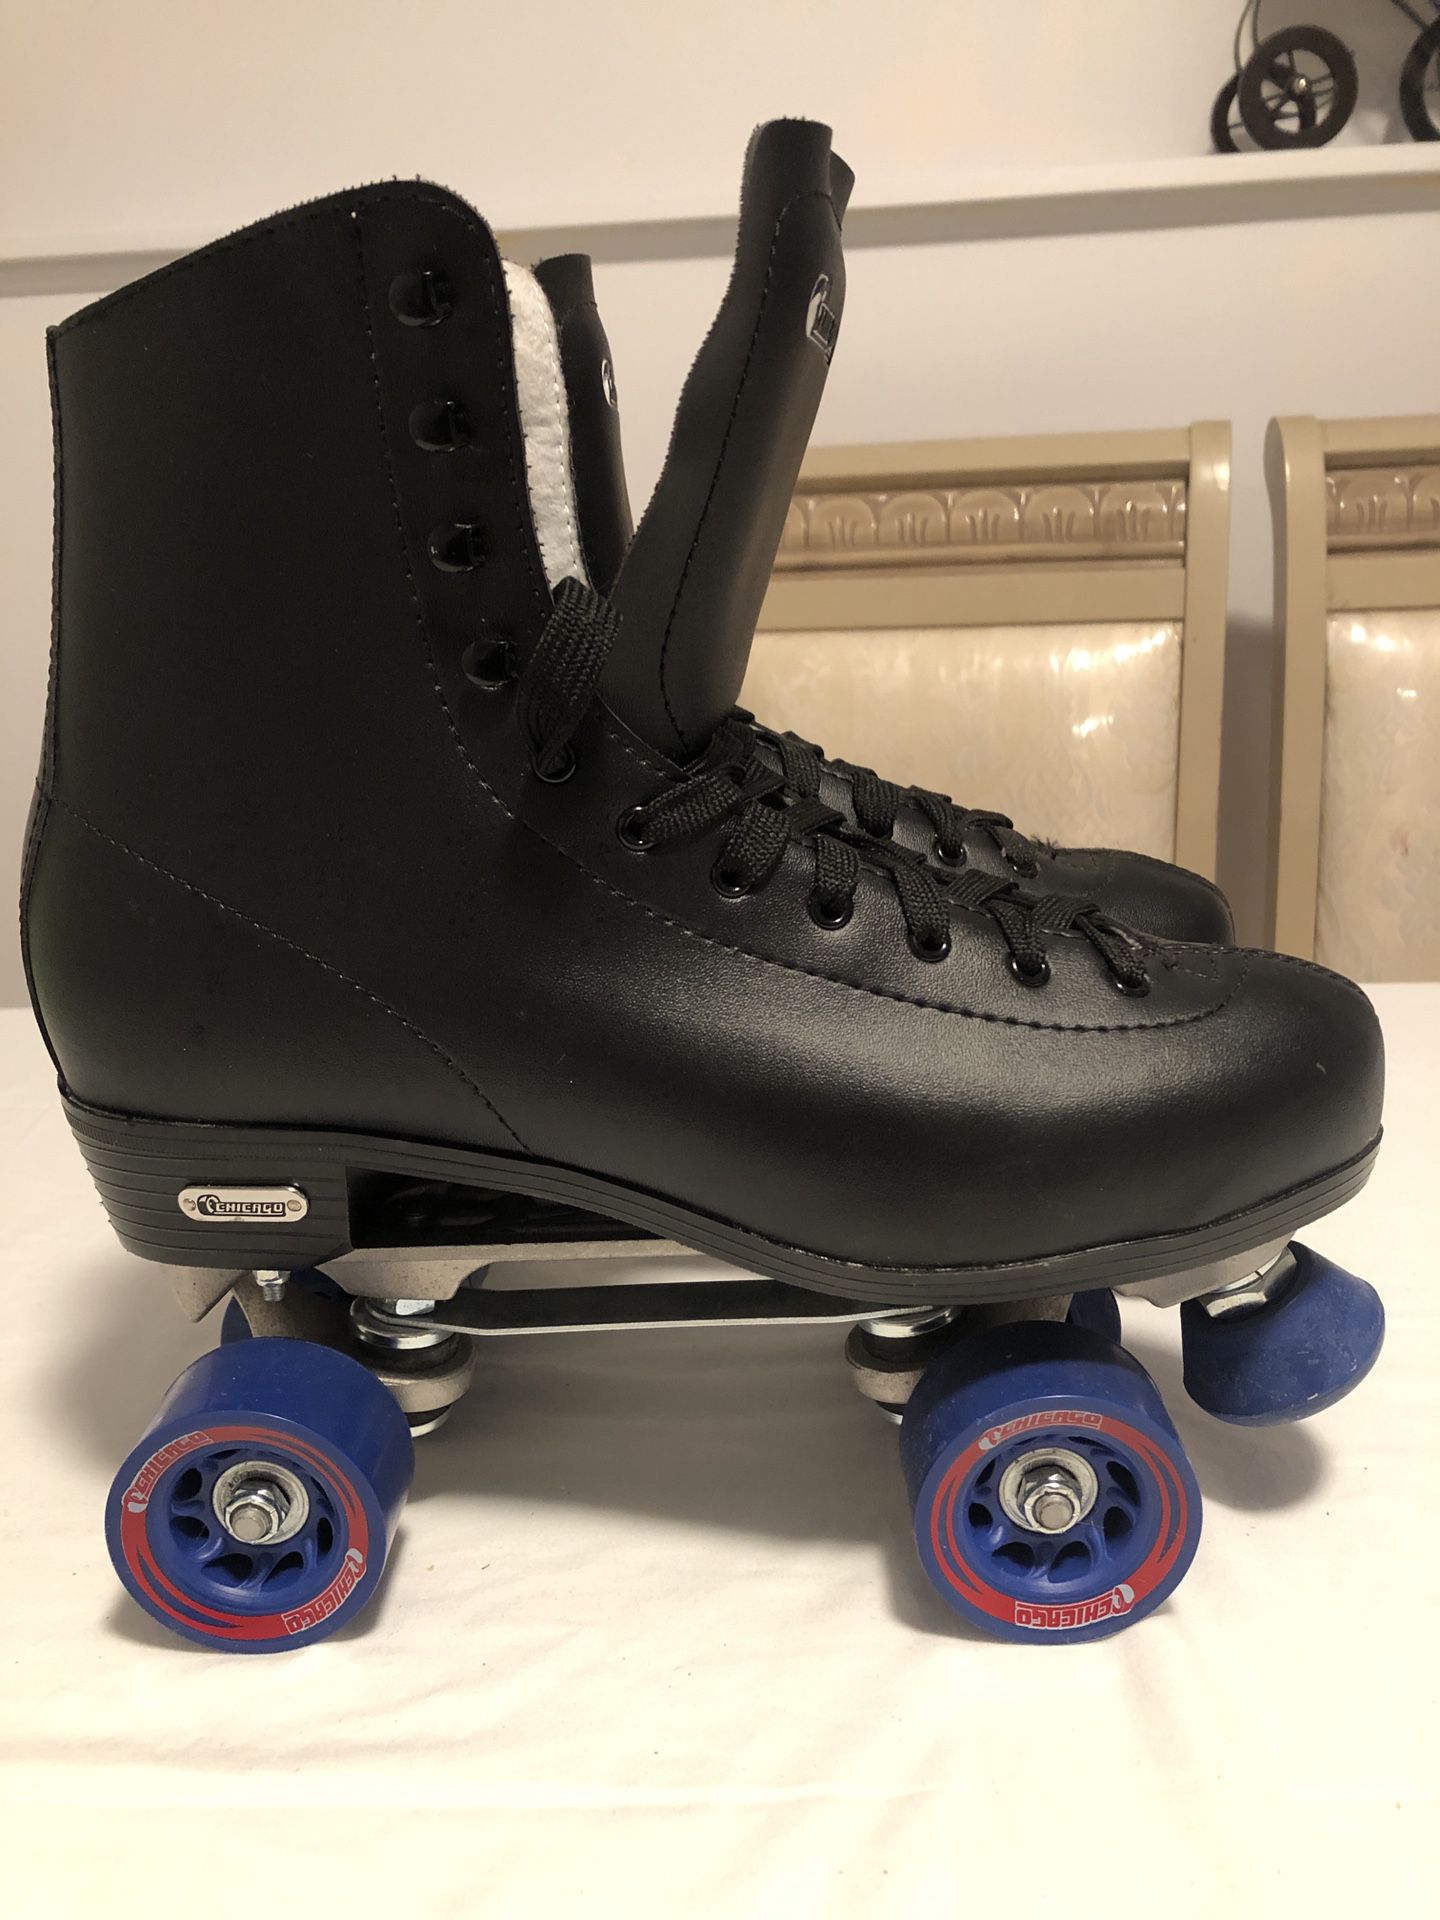 Chicago Men's Skates Size 11 Roller Skates Black Like new